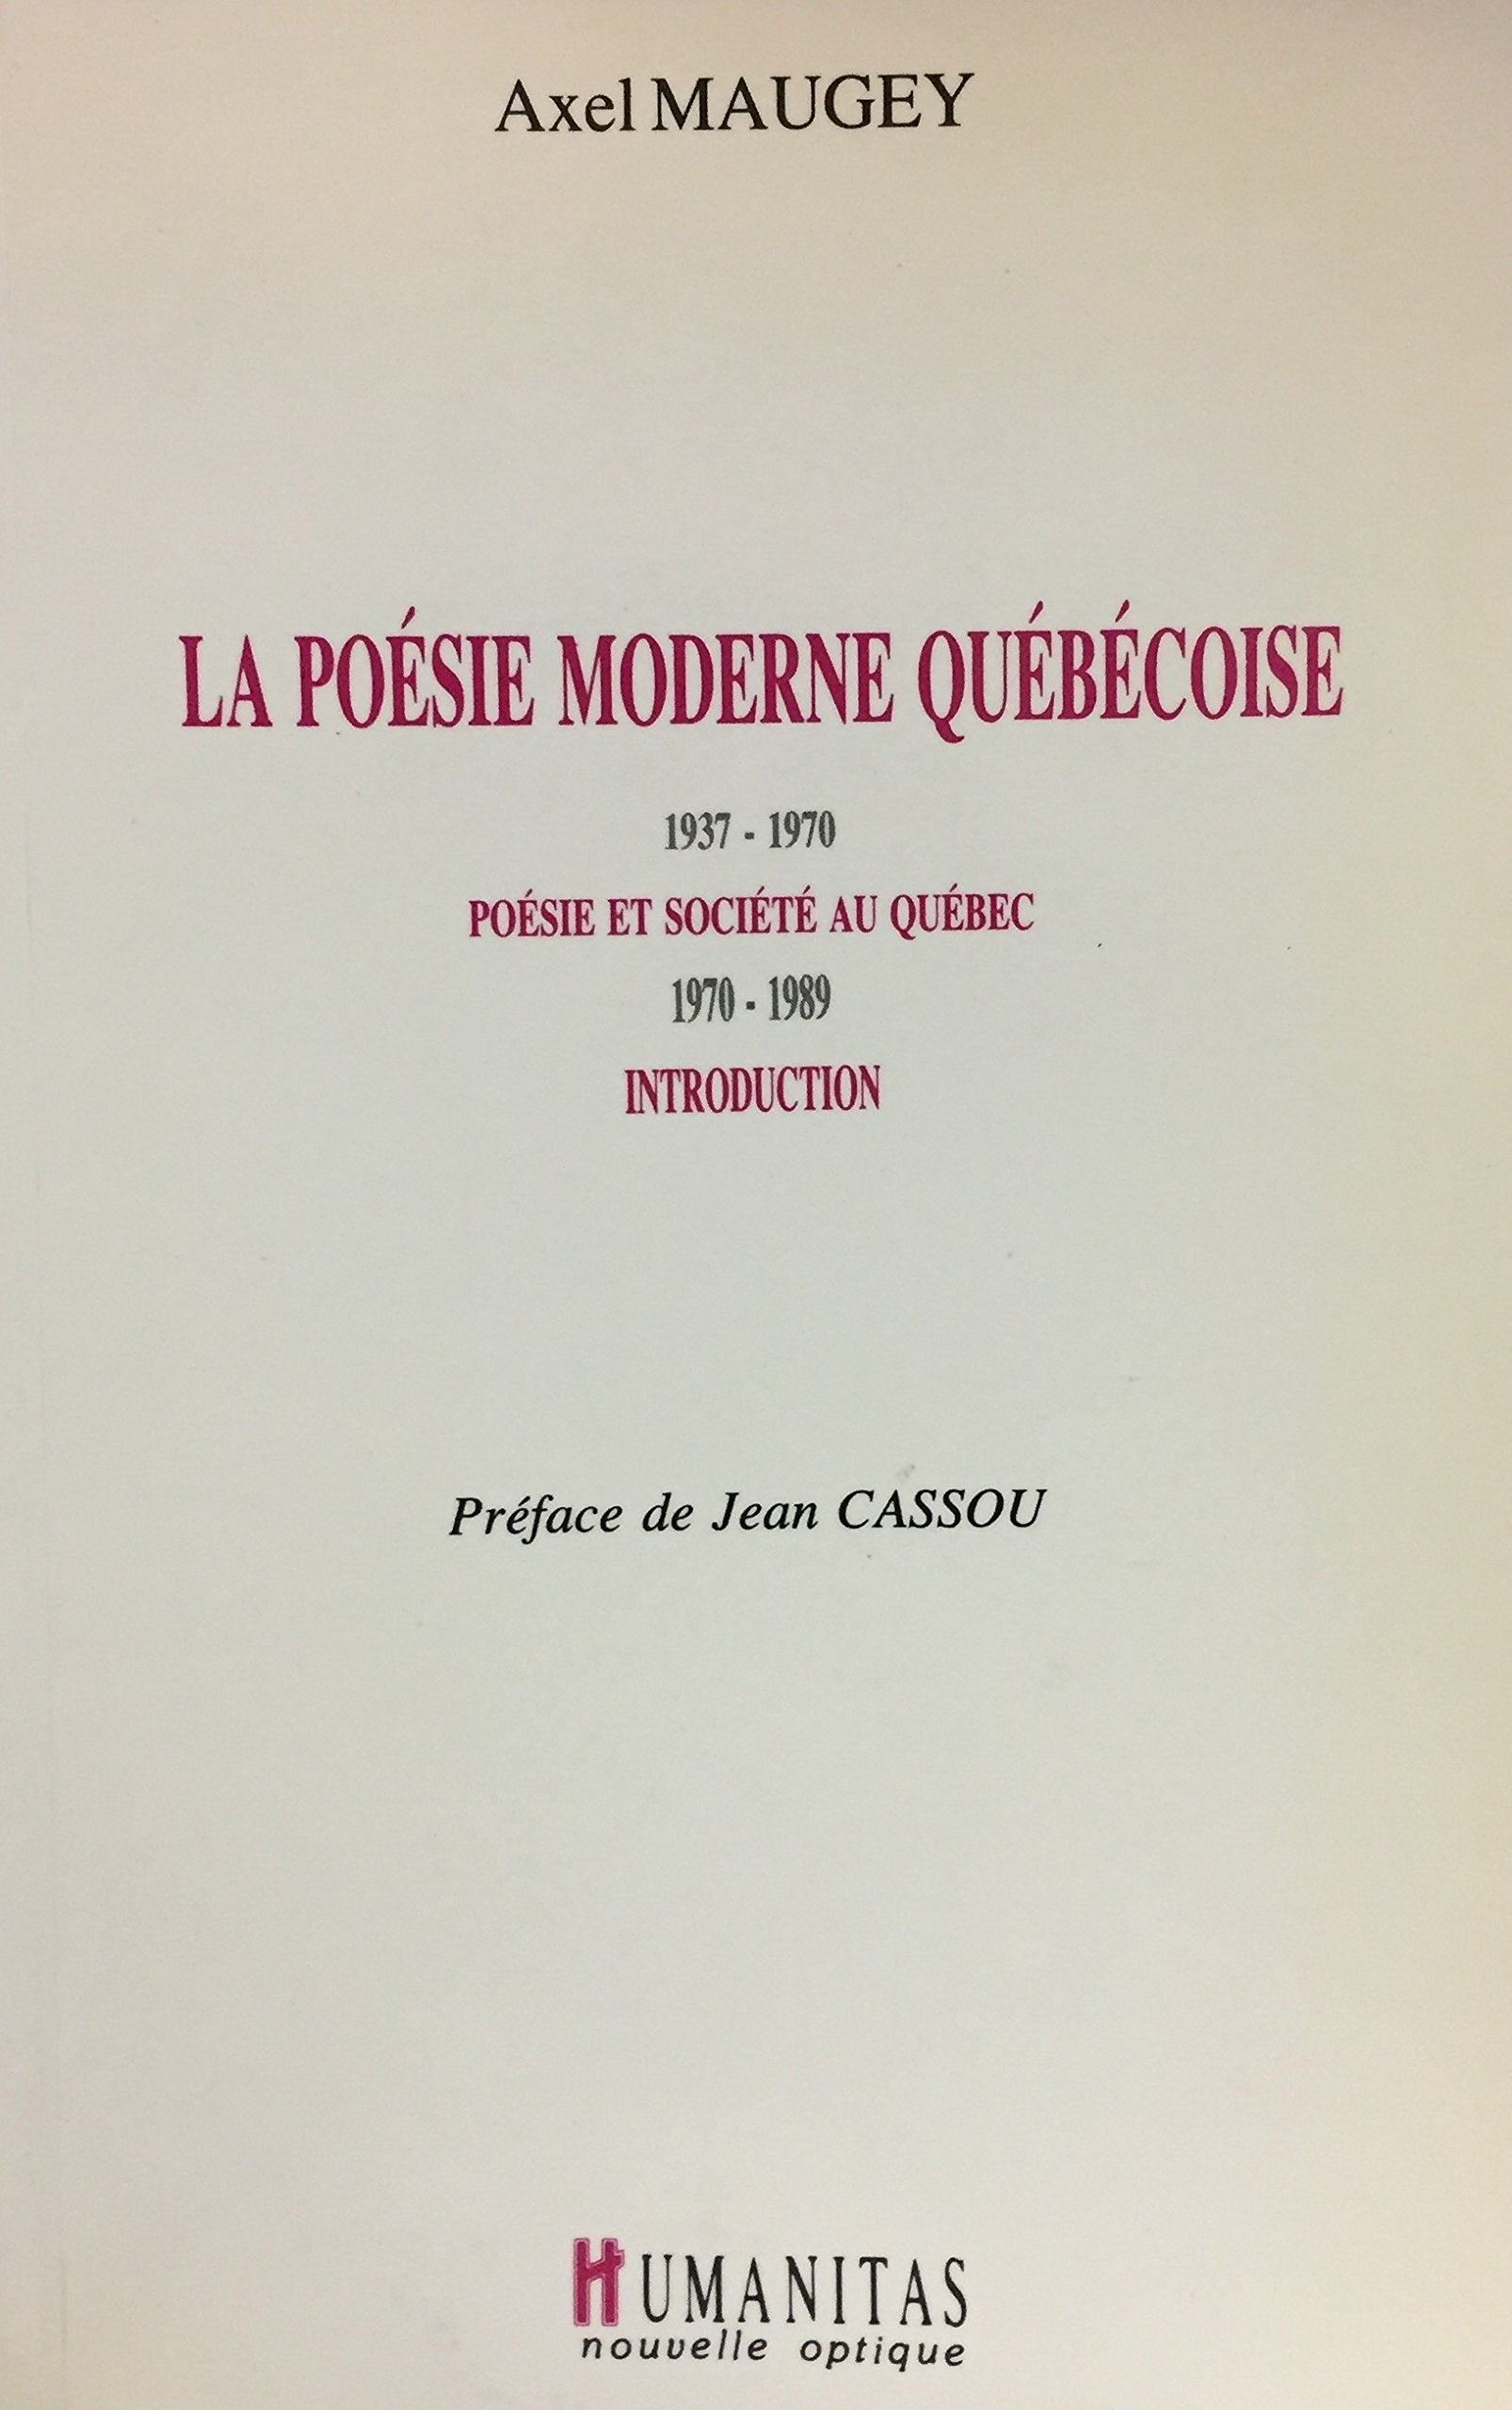 Livre ISBN 2893960200 La poésie moderne québécoise (Axel Maugey)